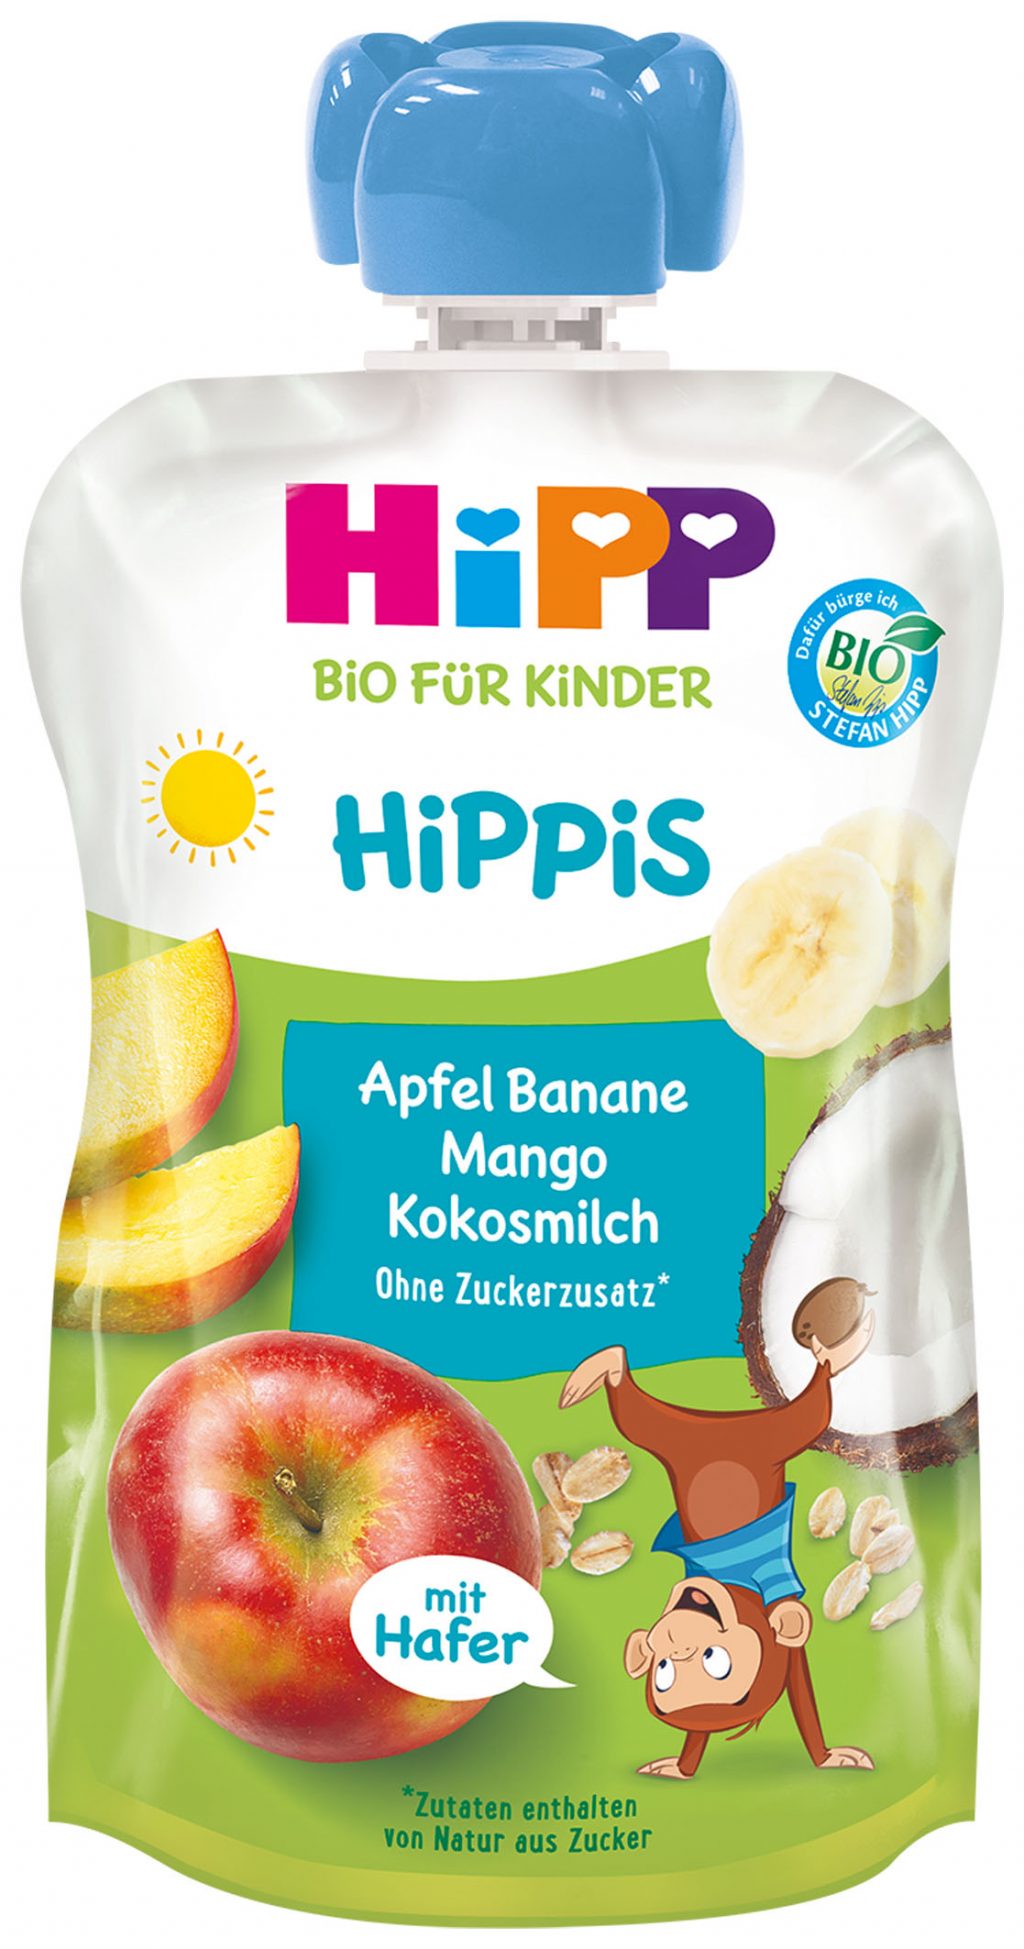 HiPP_HiPPiS_Apfel Ba_milch_mit Hafer